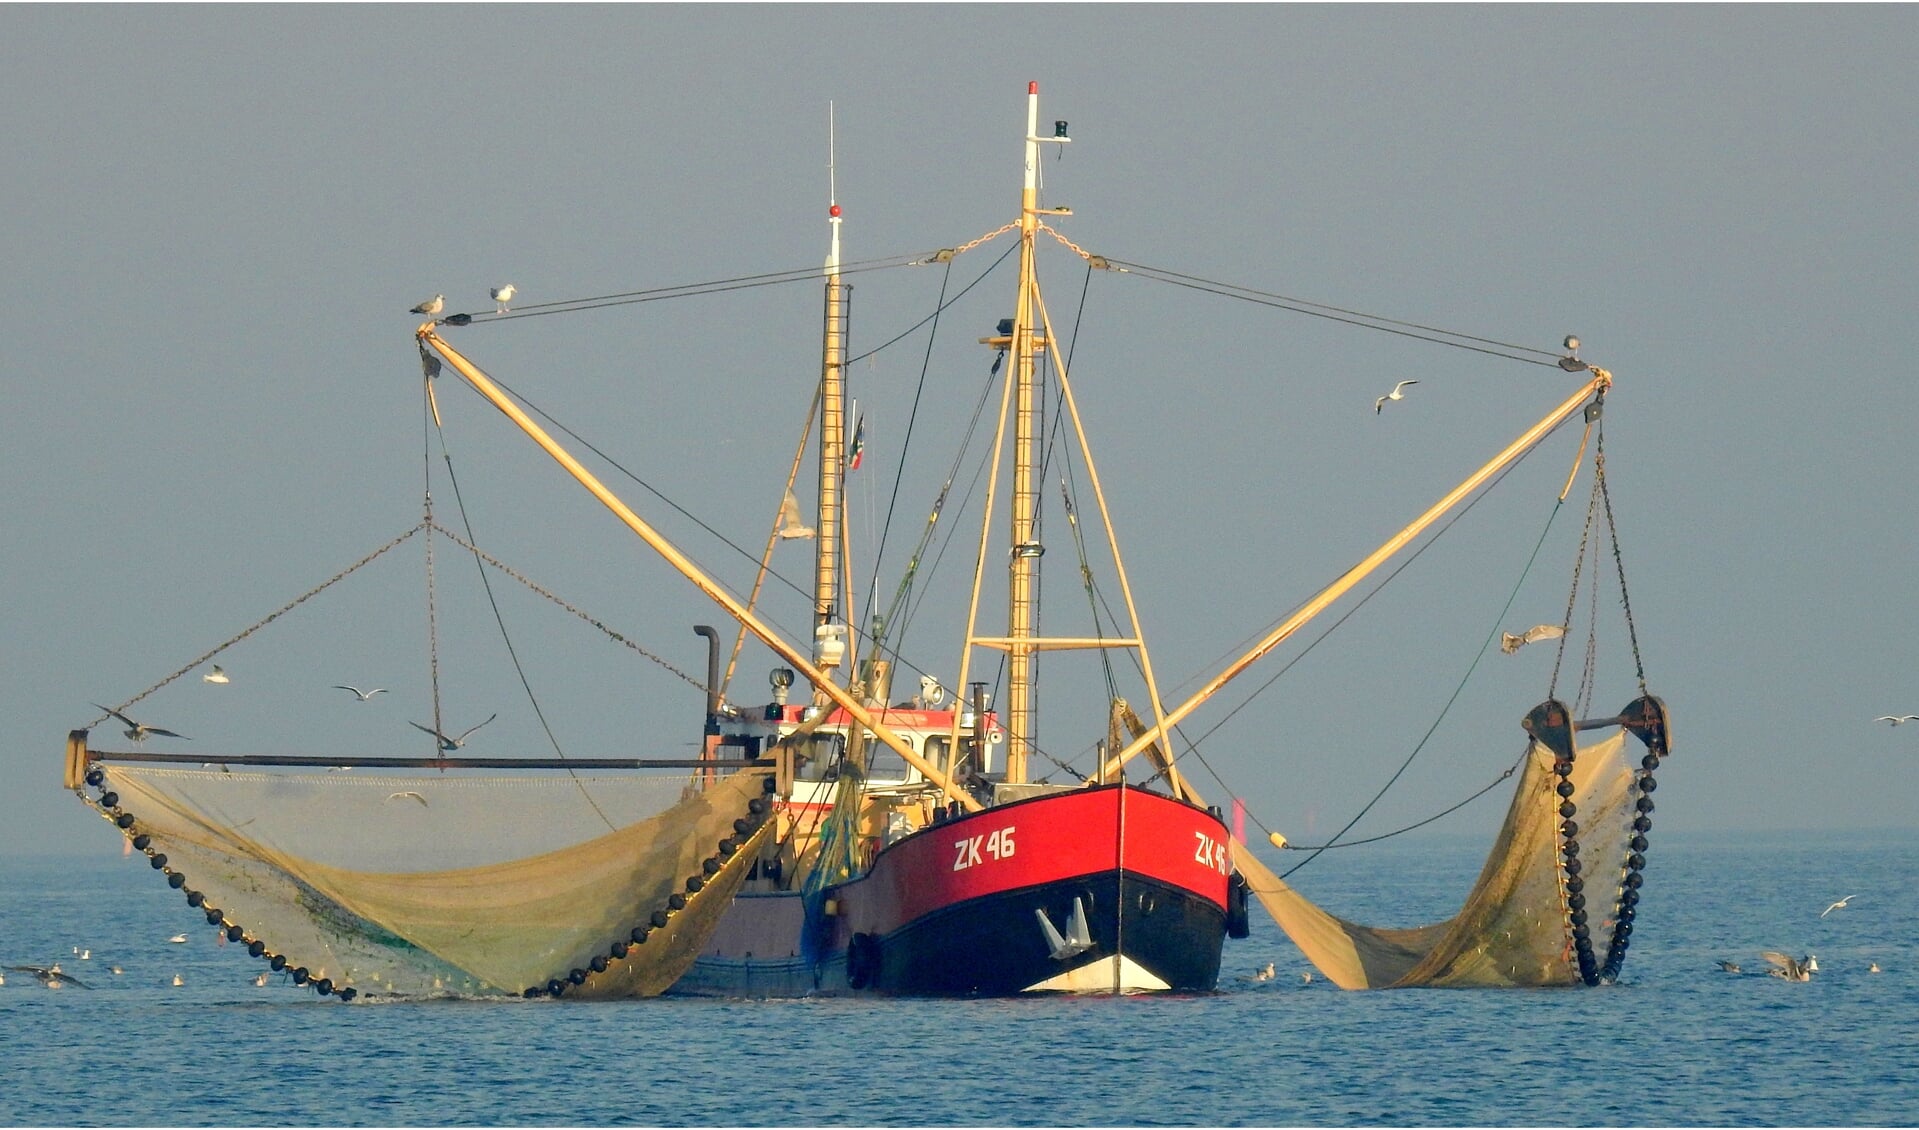 Het garnalenvissen, onder andere met de ZK46 uit Zoutkamp, wordt verder beperkt.